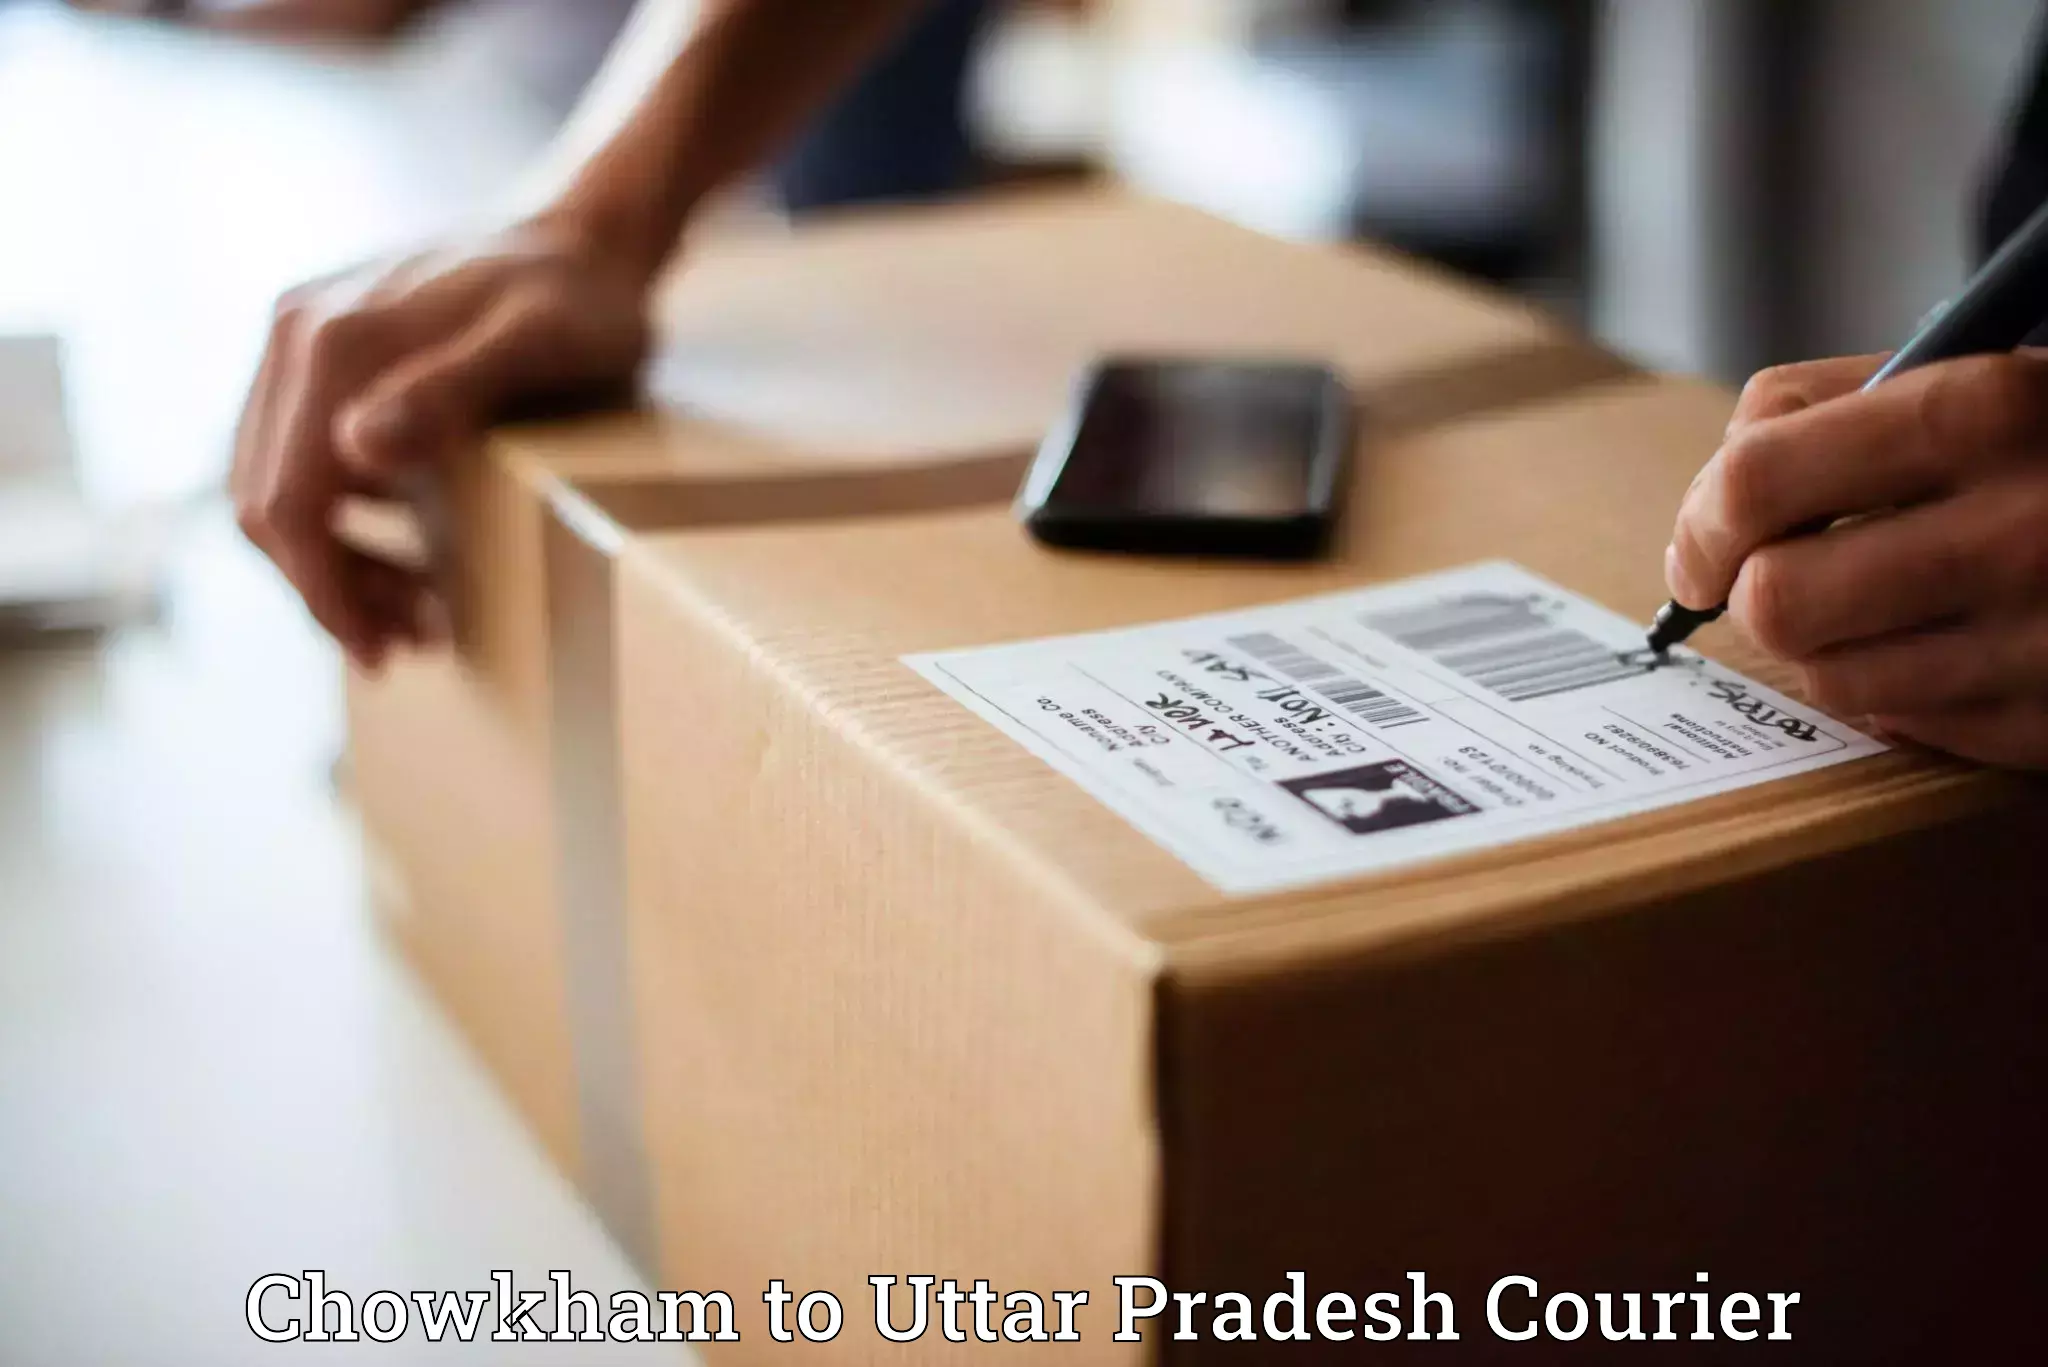 Efficient parcel service Chowkham to Tajpur Dehma